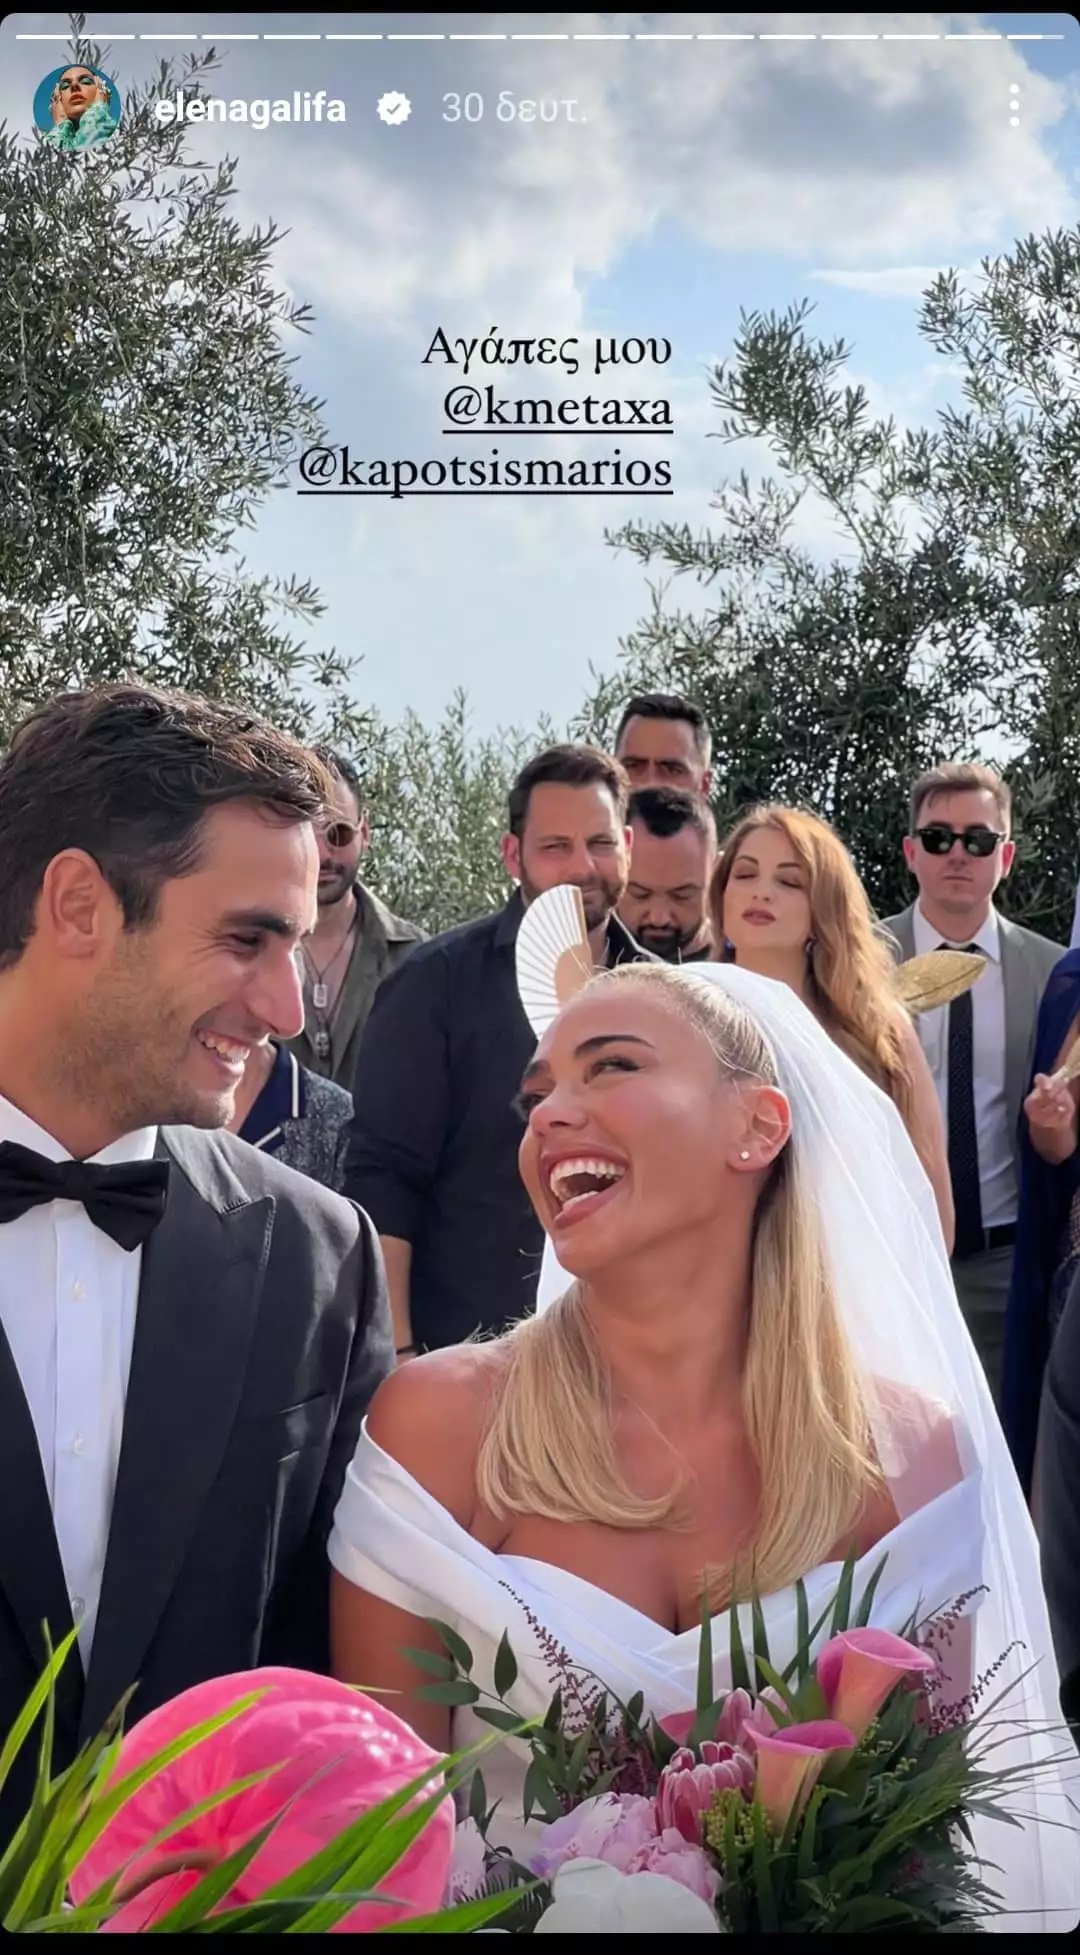 Παντρεύτηκαν Κόνι Μεταξά- Μάριος Καπότσης: Συγκινημένος ο Λευτέρης Πανταζής! (εικόνες)